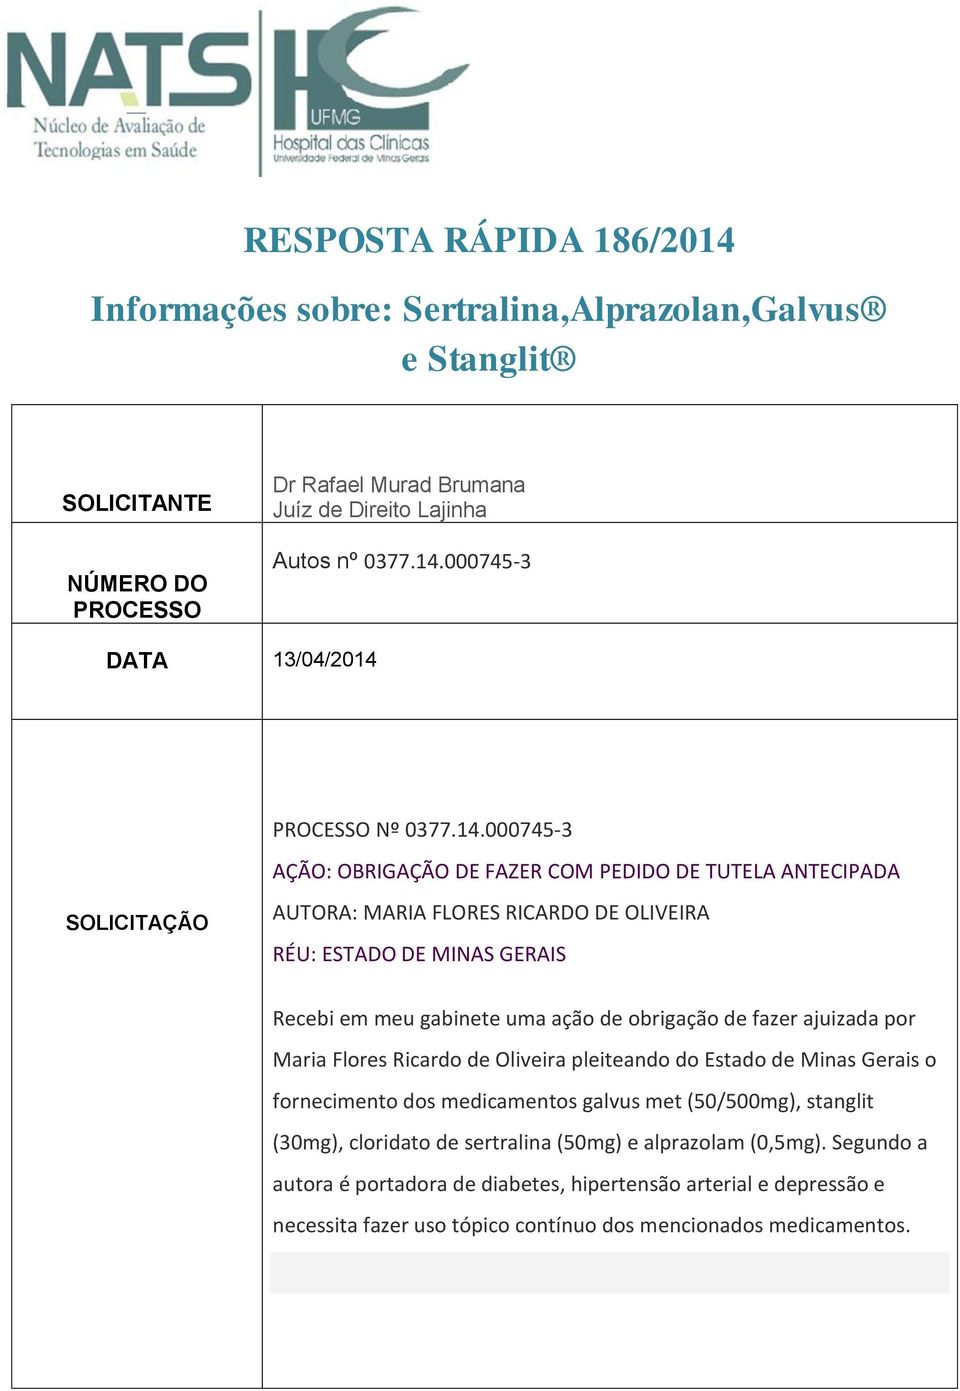 obrigação de fazer ajuizada por Maria Flores Ricardo de Oliveira pleiteando do Estado de Minas Gerais o fornecimento dos medicamentos galvus met (50/500mg), stanglit (30mg), cloridato de